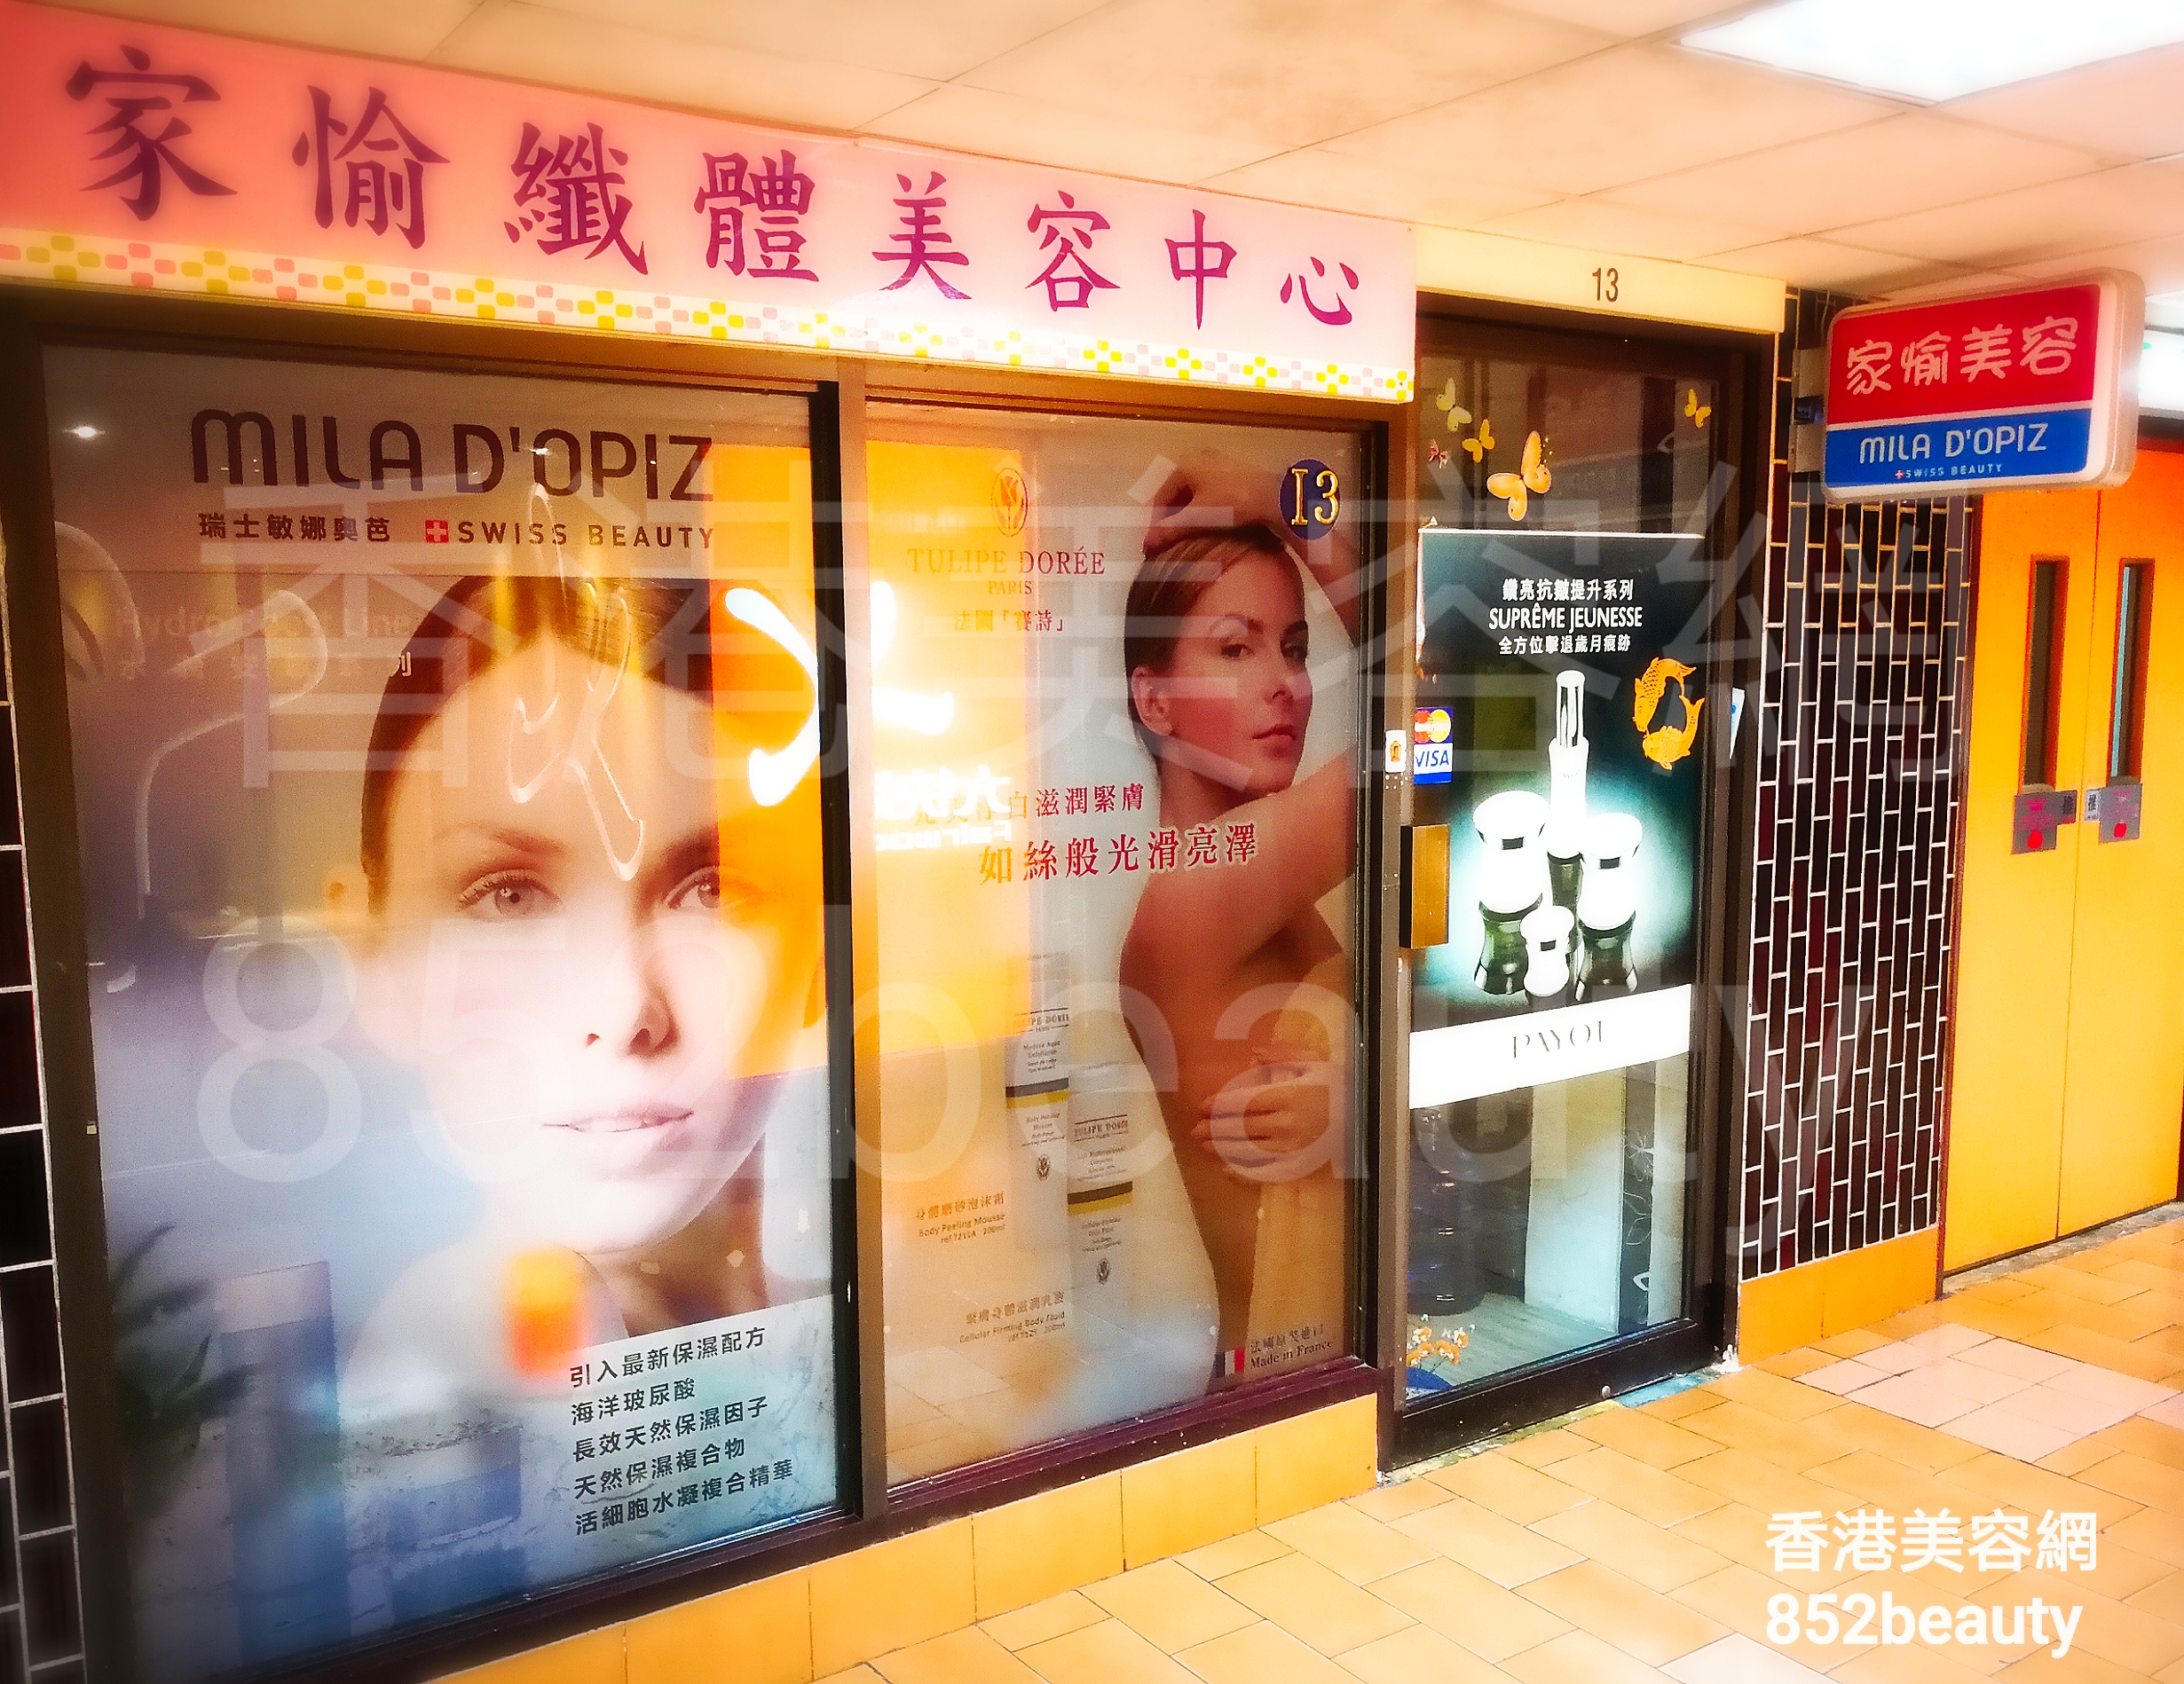 香港美容網 Hong Kong Beauty Salon 美容院 / 美容師: 家愉纖體美容中心